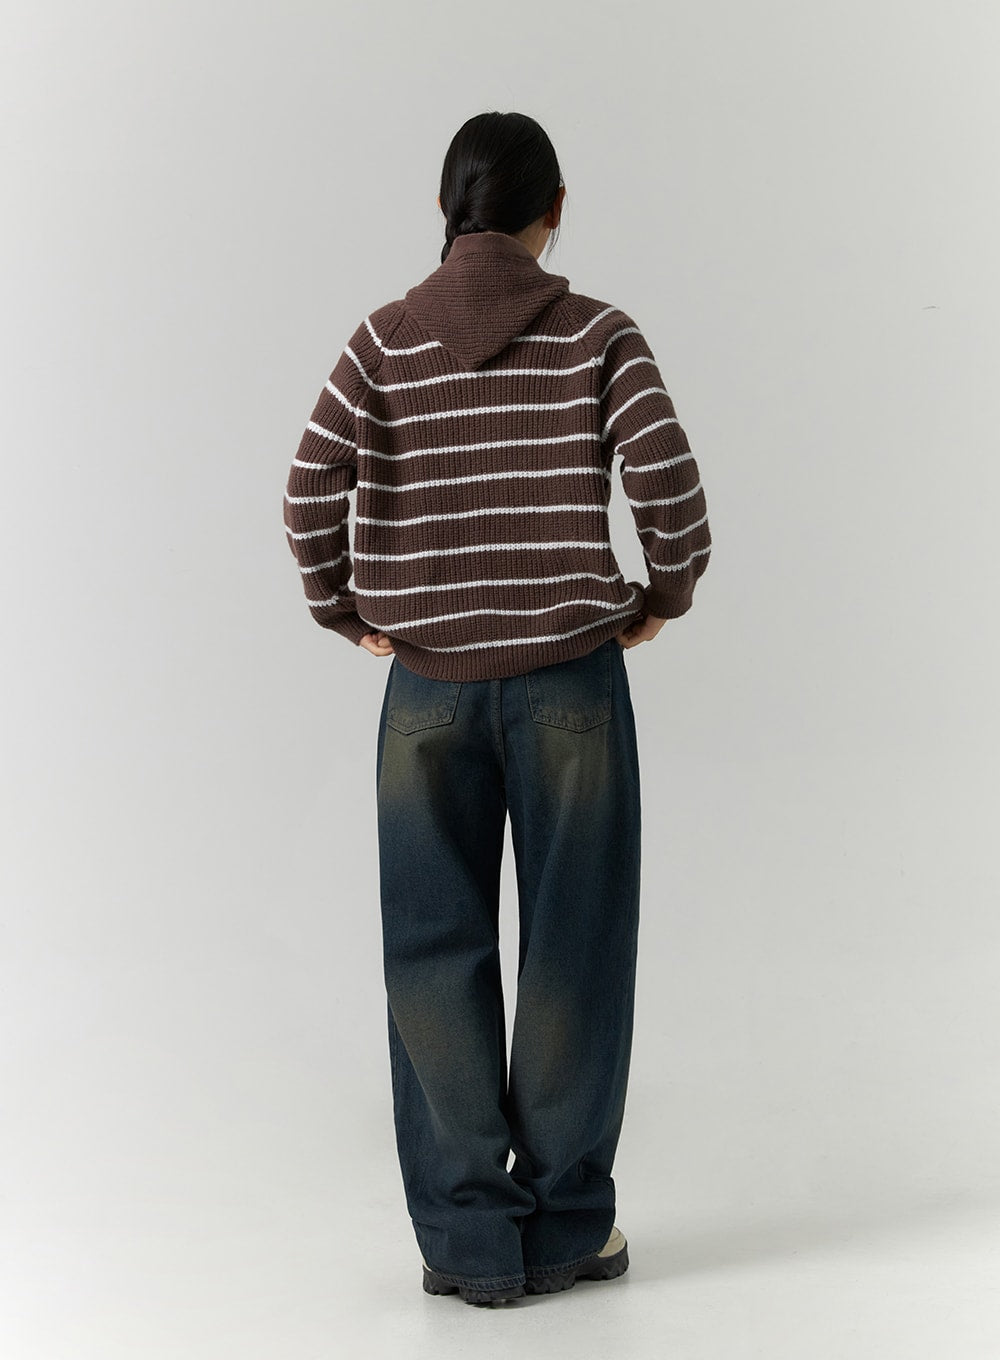 washed-denim-wide-leg-jeans-cd304-1